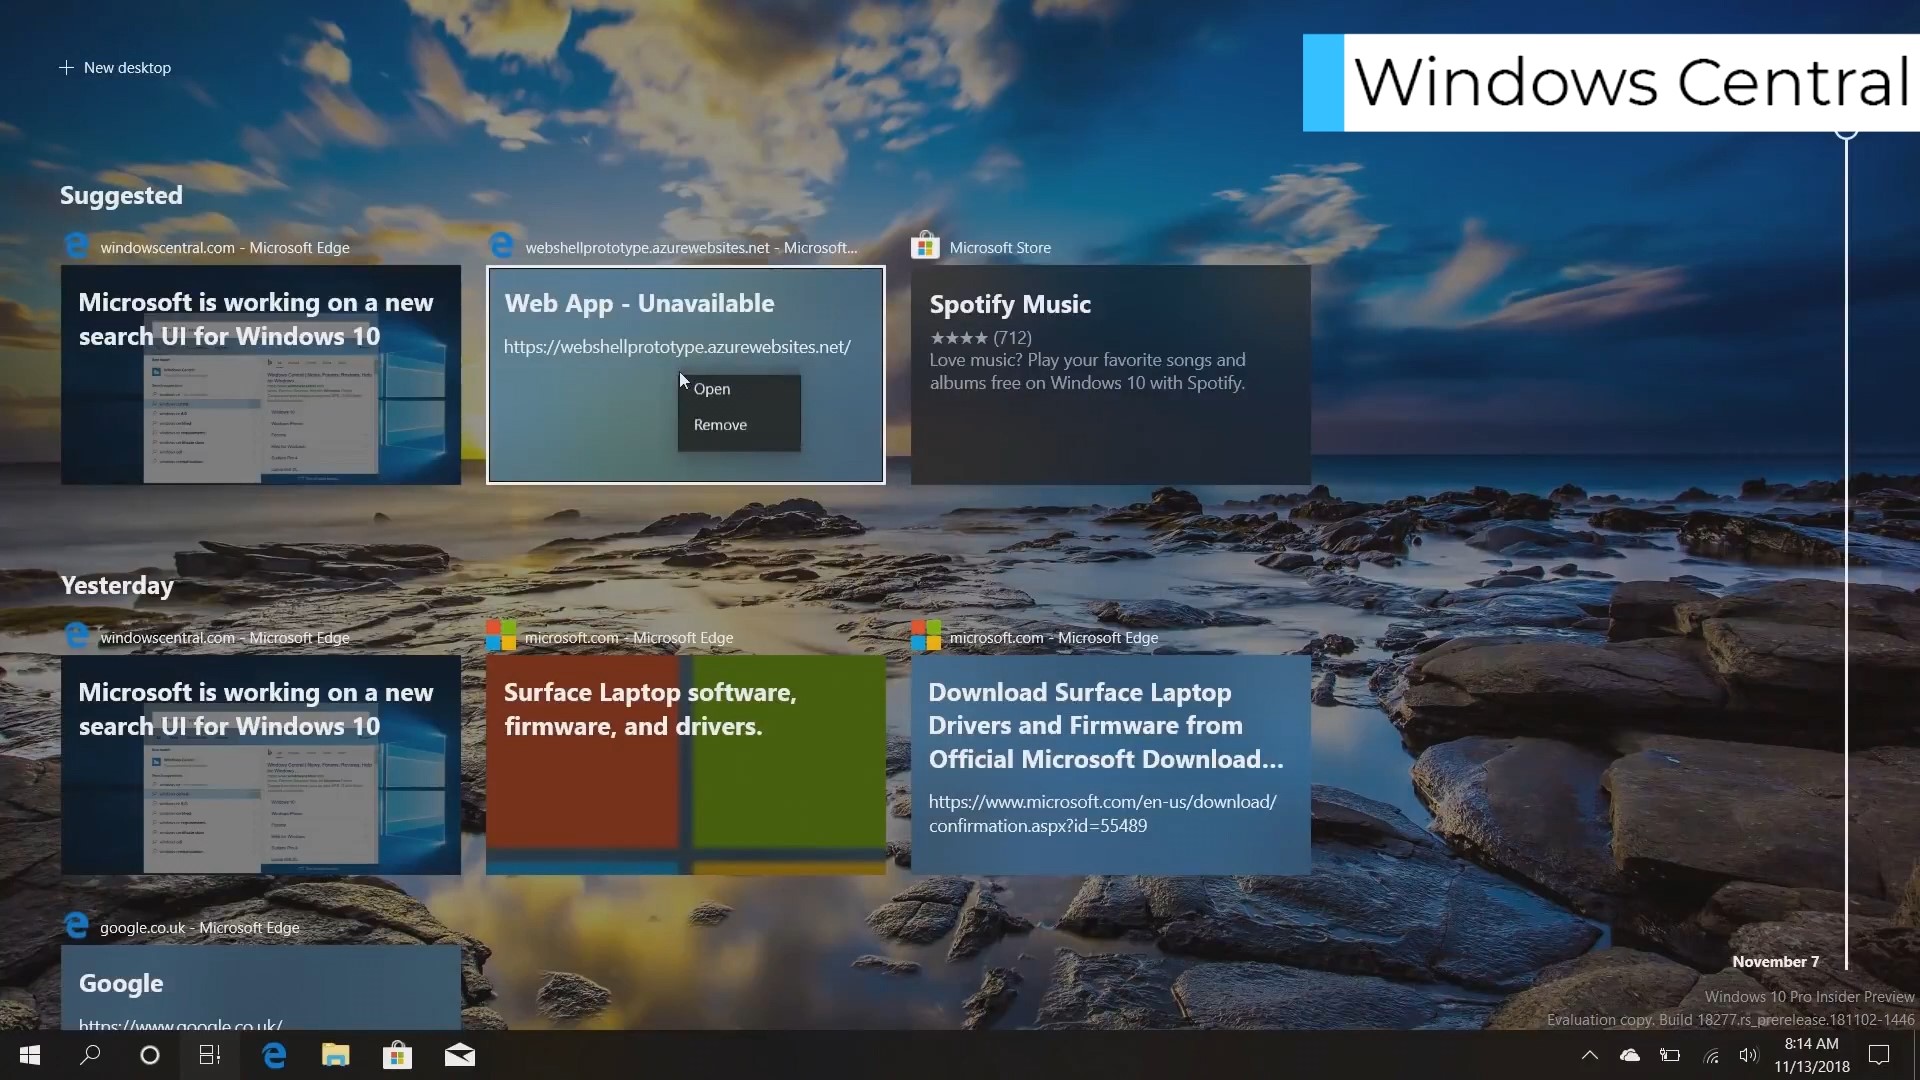 App unavailable. Основные программы для компьютера Windows 10. Новые возможности виндовс 10 презентация. 4 Известных процессора Майкрософт, опен, Лидер. Как поставить обои на Microsoft Edge.